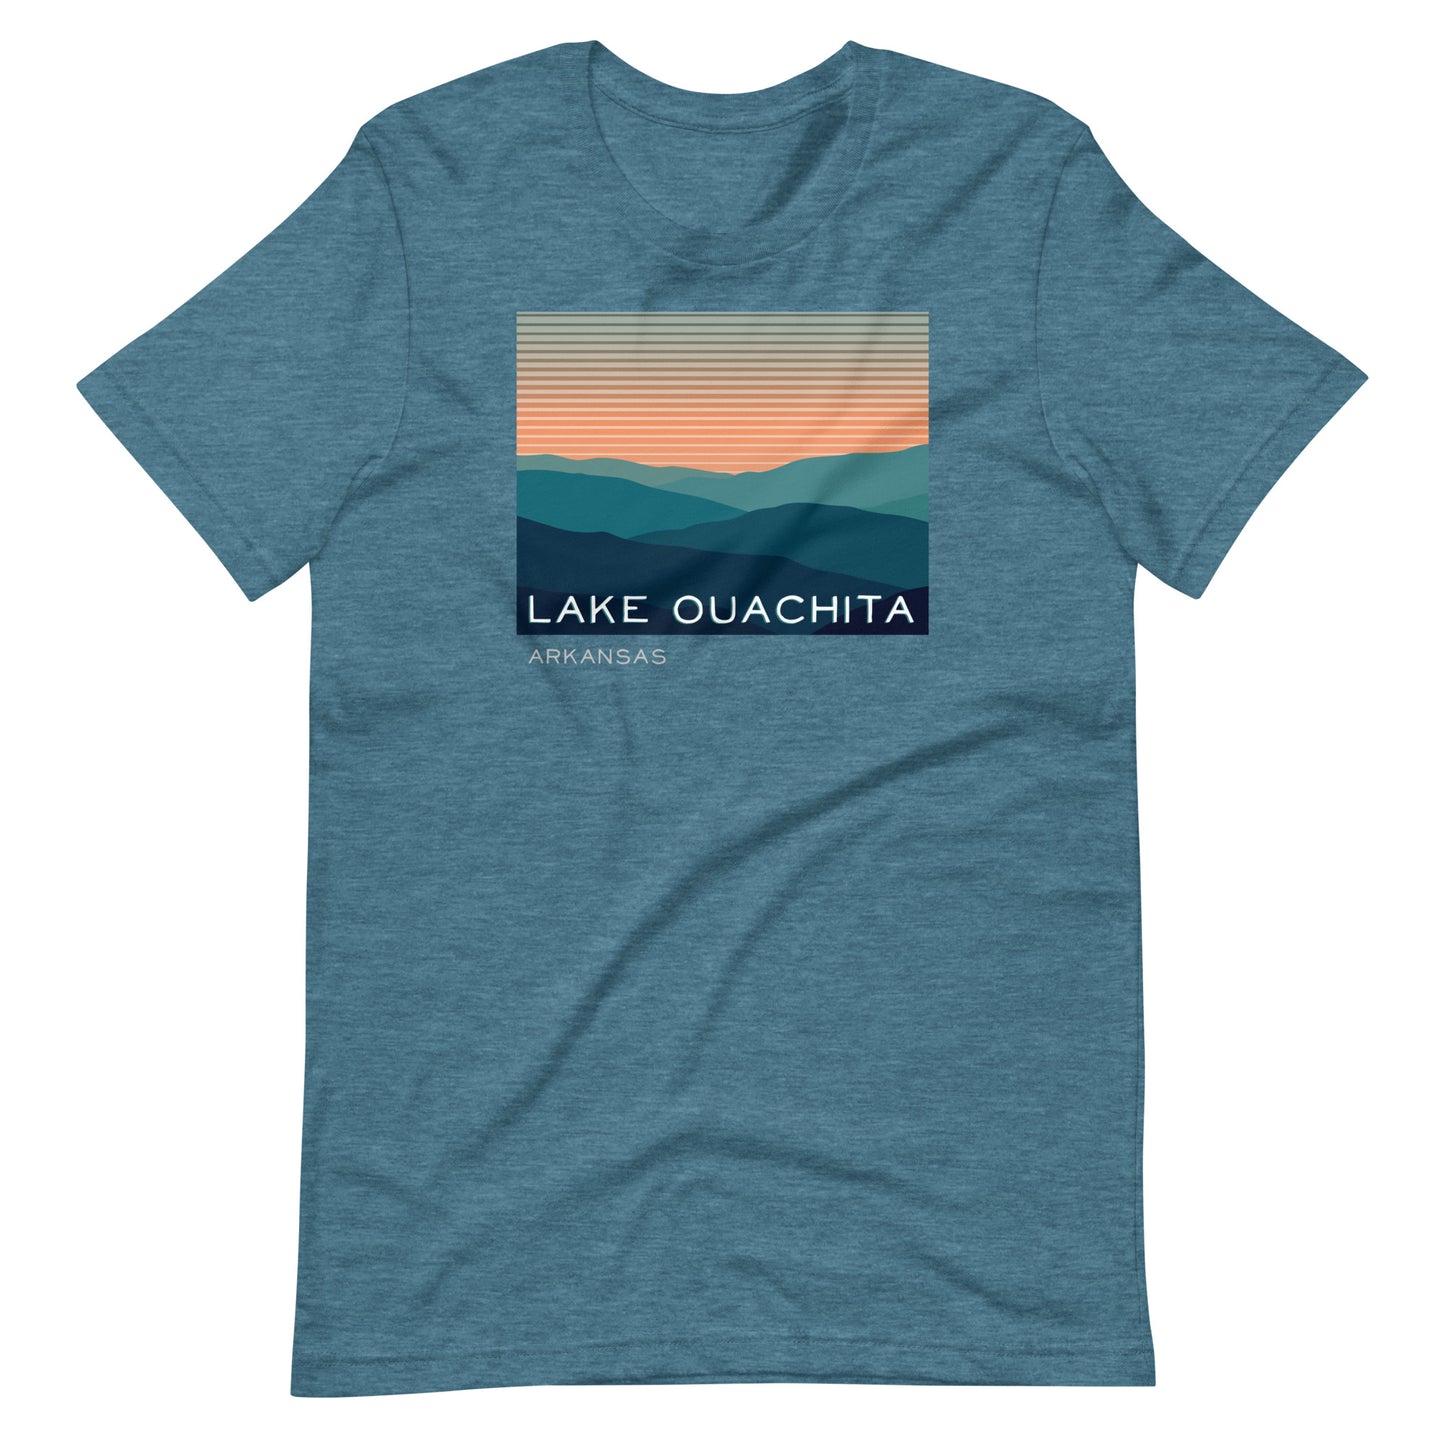 Lake Ouachita Mountain Range